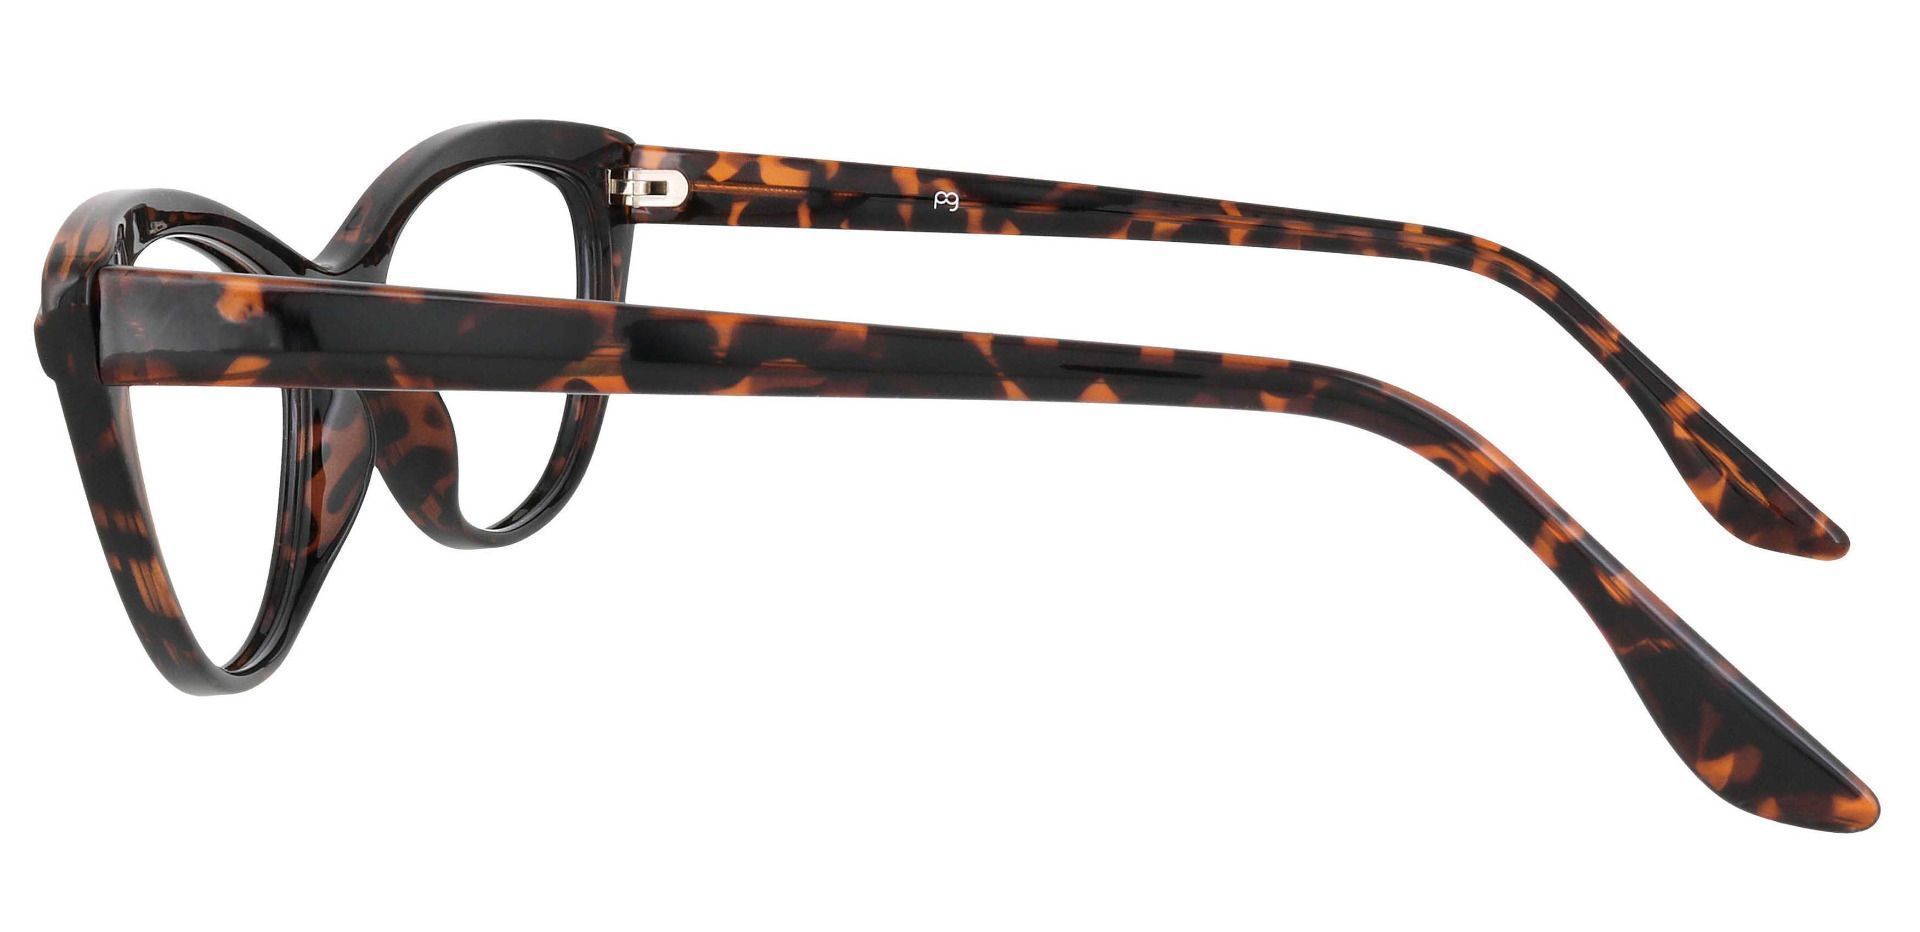 Twilight Cat Eye Prescription Glasses - Tortoise